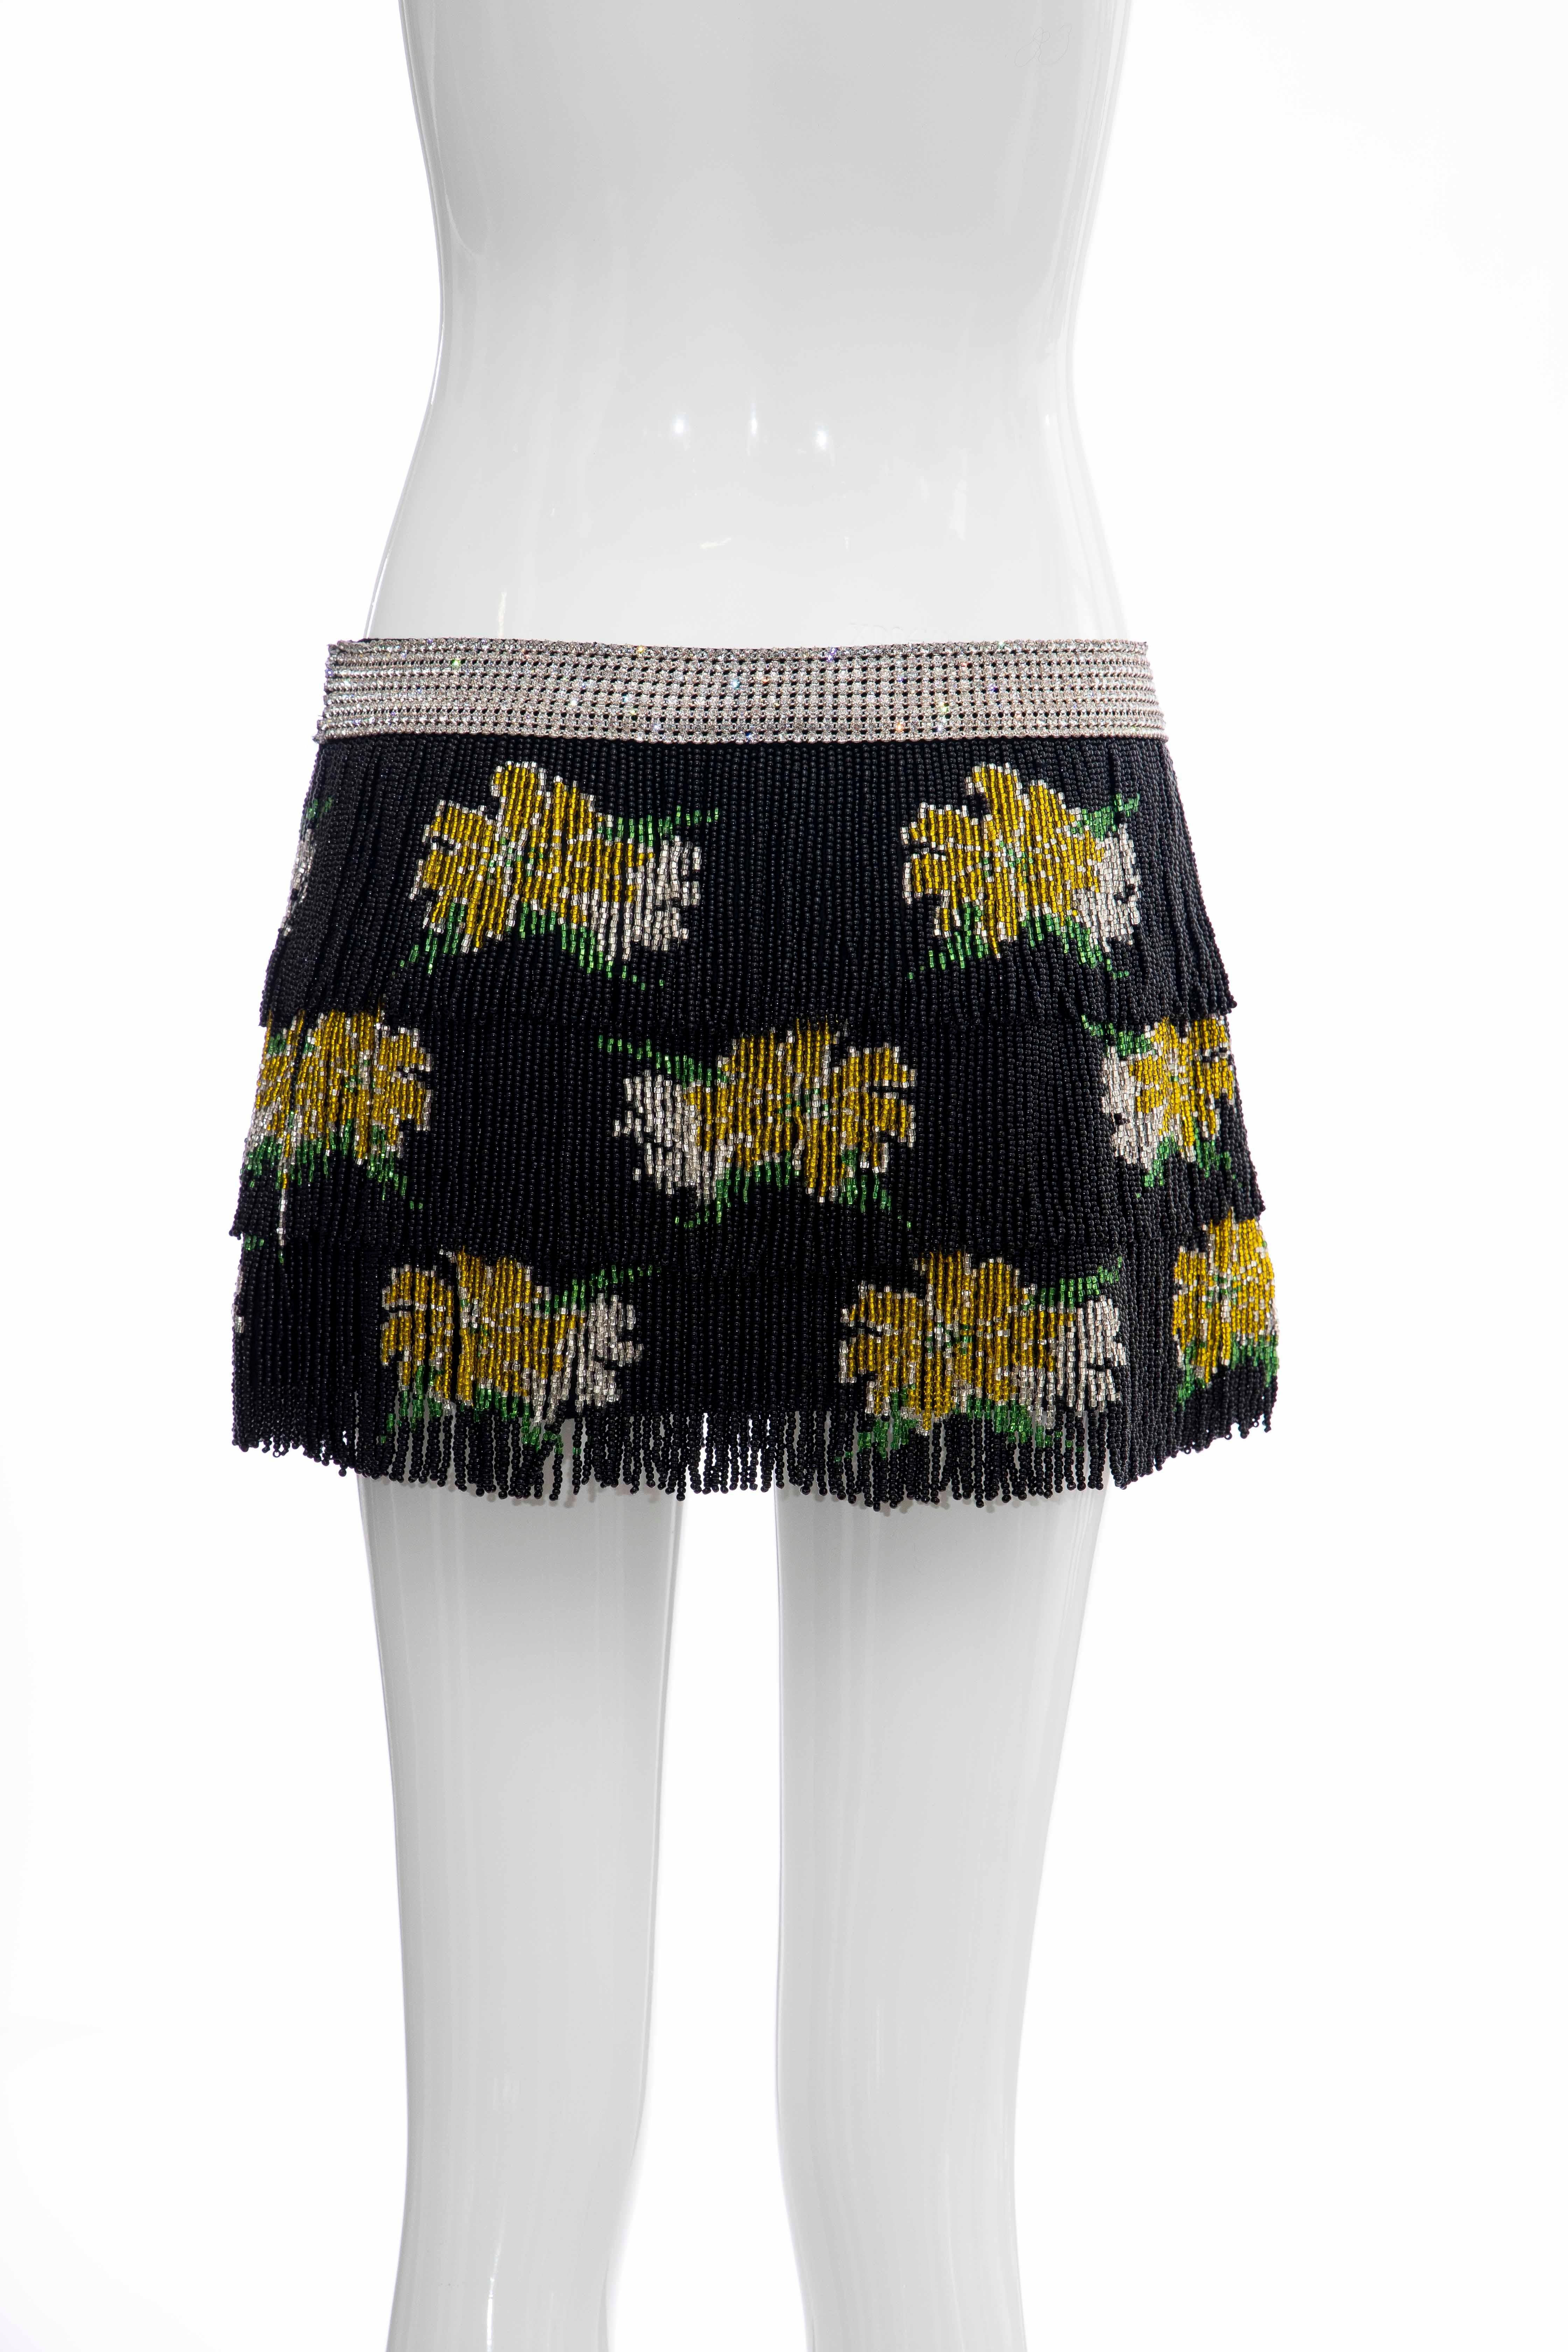 Women's Dolce & Gabbana Runway Black Silk Beaded Fringe Diamanté Mini-Skirt, Spring 2000 For Sale